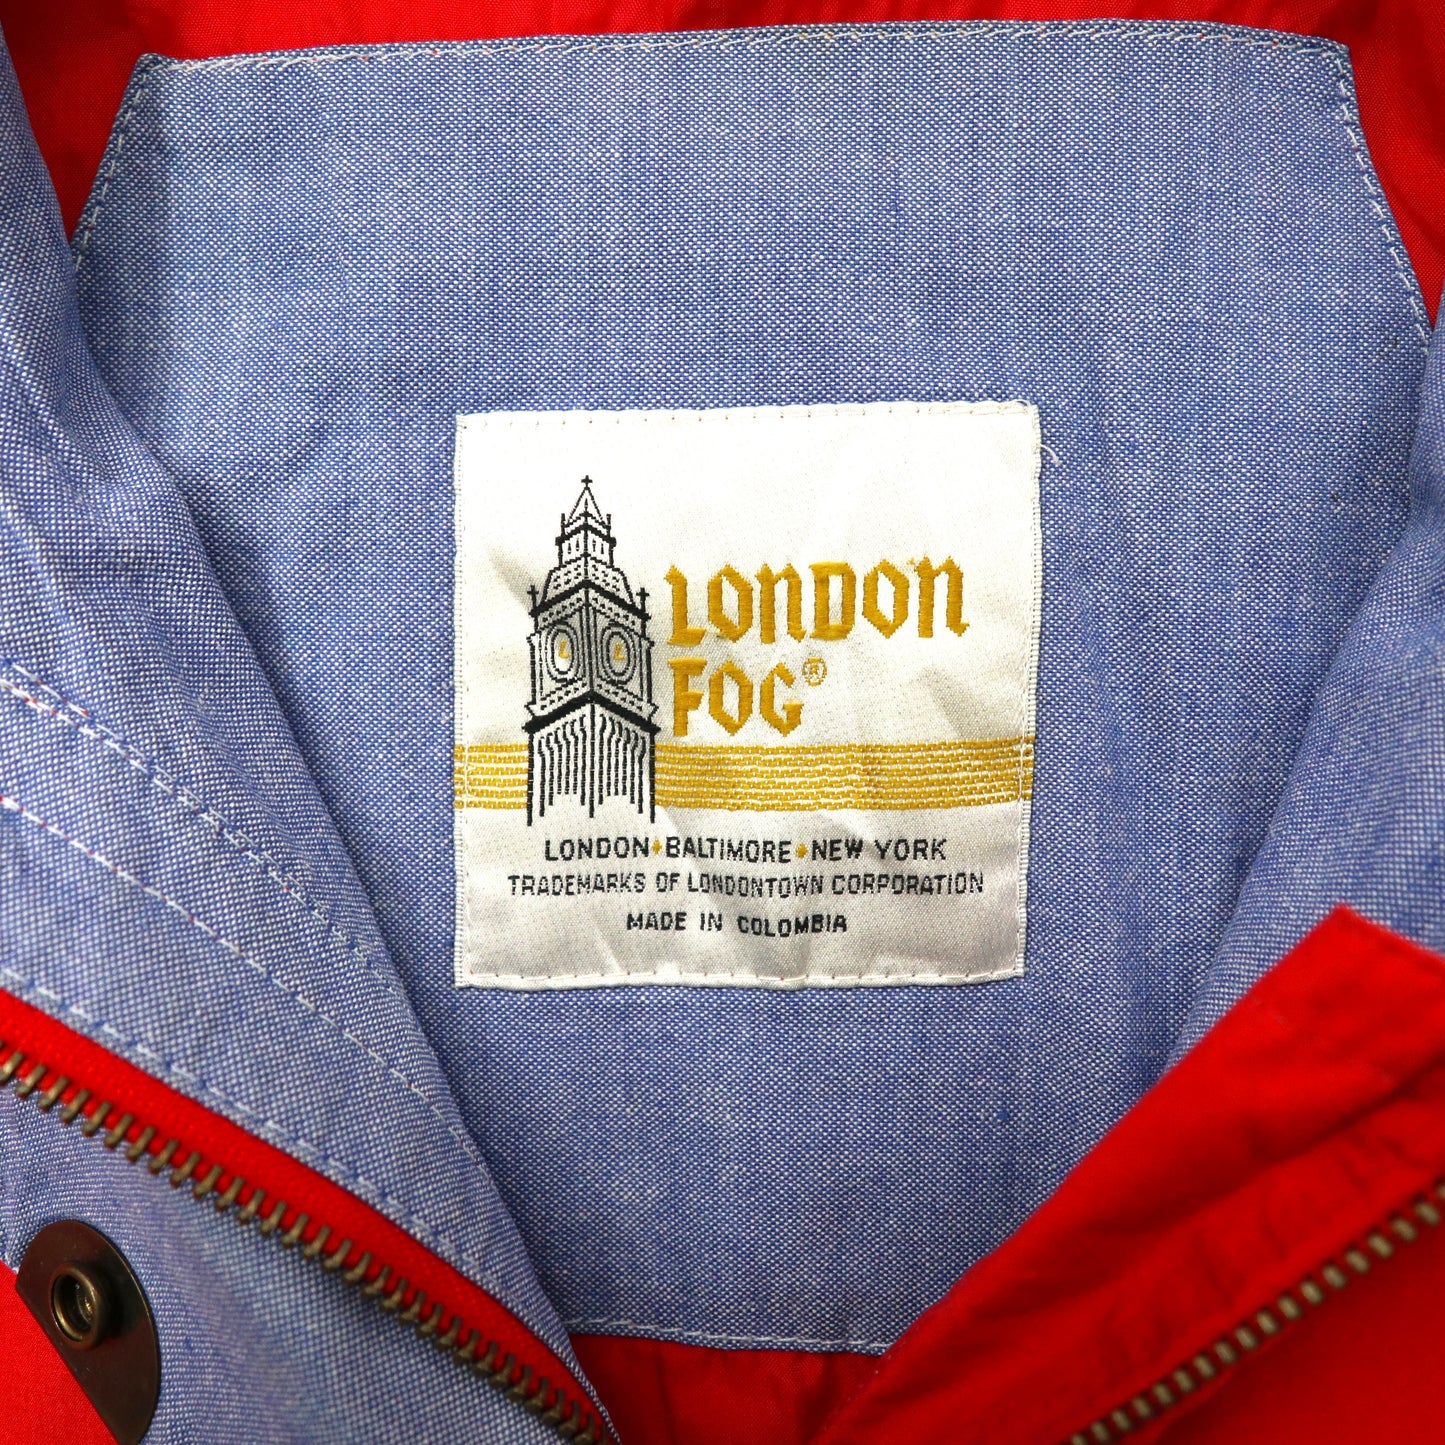 LONDON FOG セーリングジャケット XL レッド ナイロン ドローコード フード収納式 コロンビア製